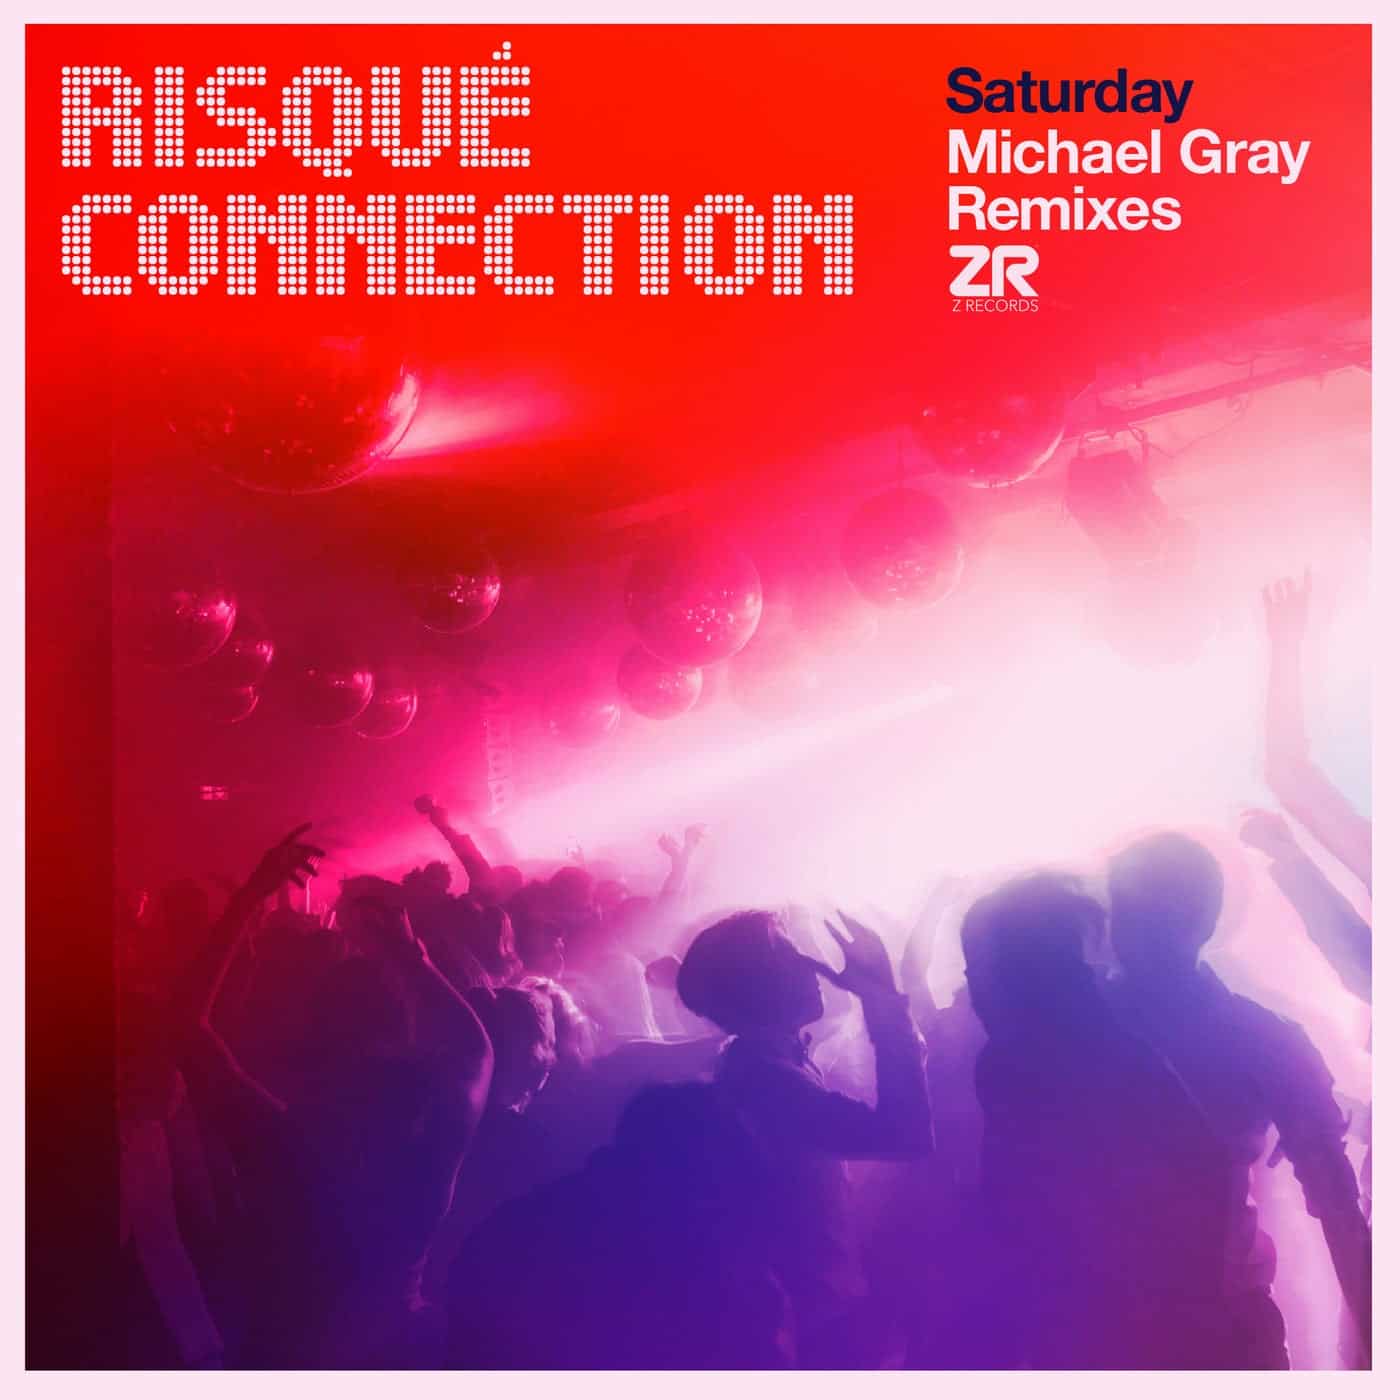 image cover: Dave Lee, Risqué Connection - Saturday (Michael Gray Remixes) / ZEDD12331